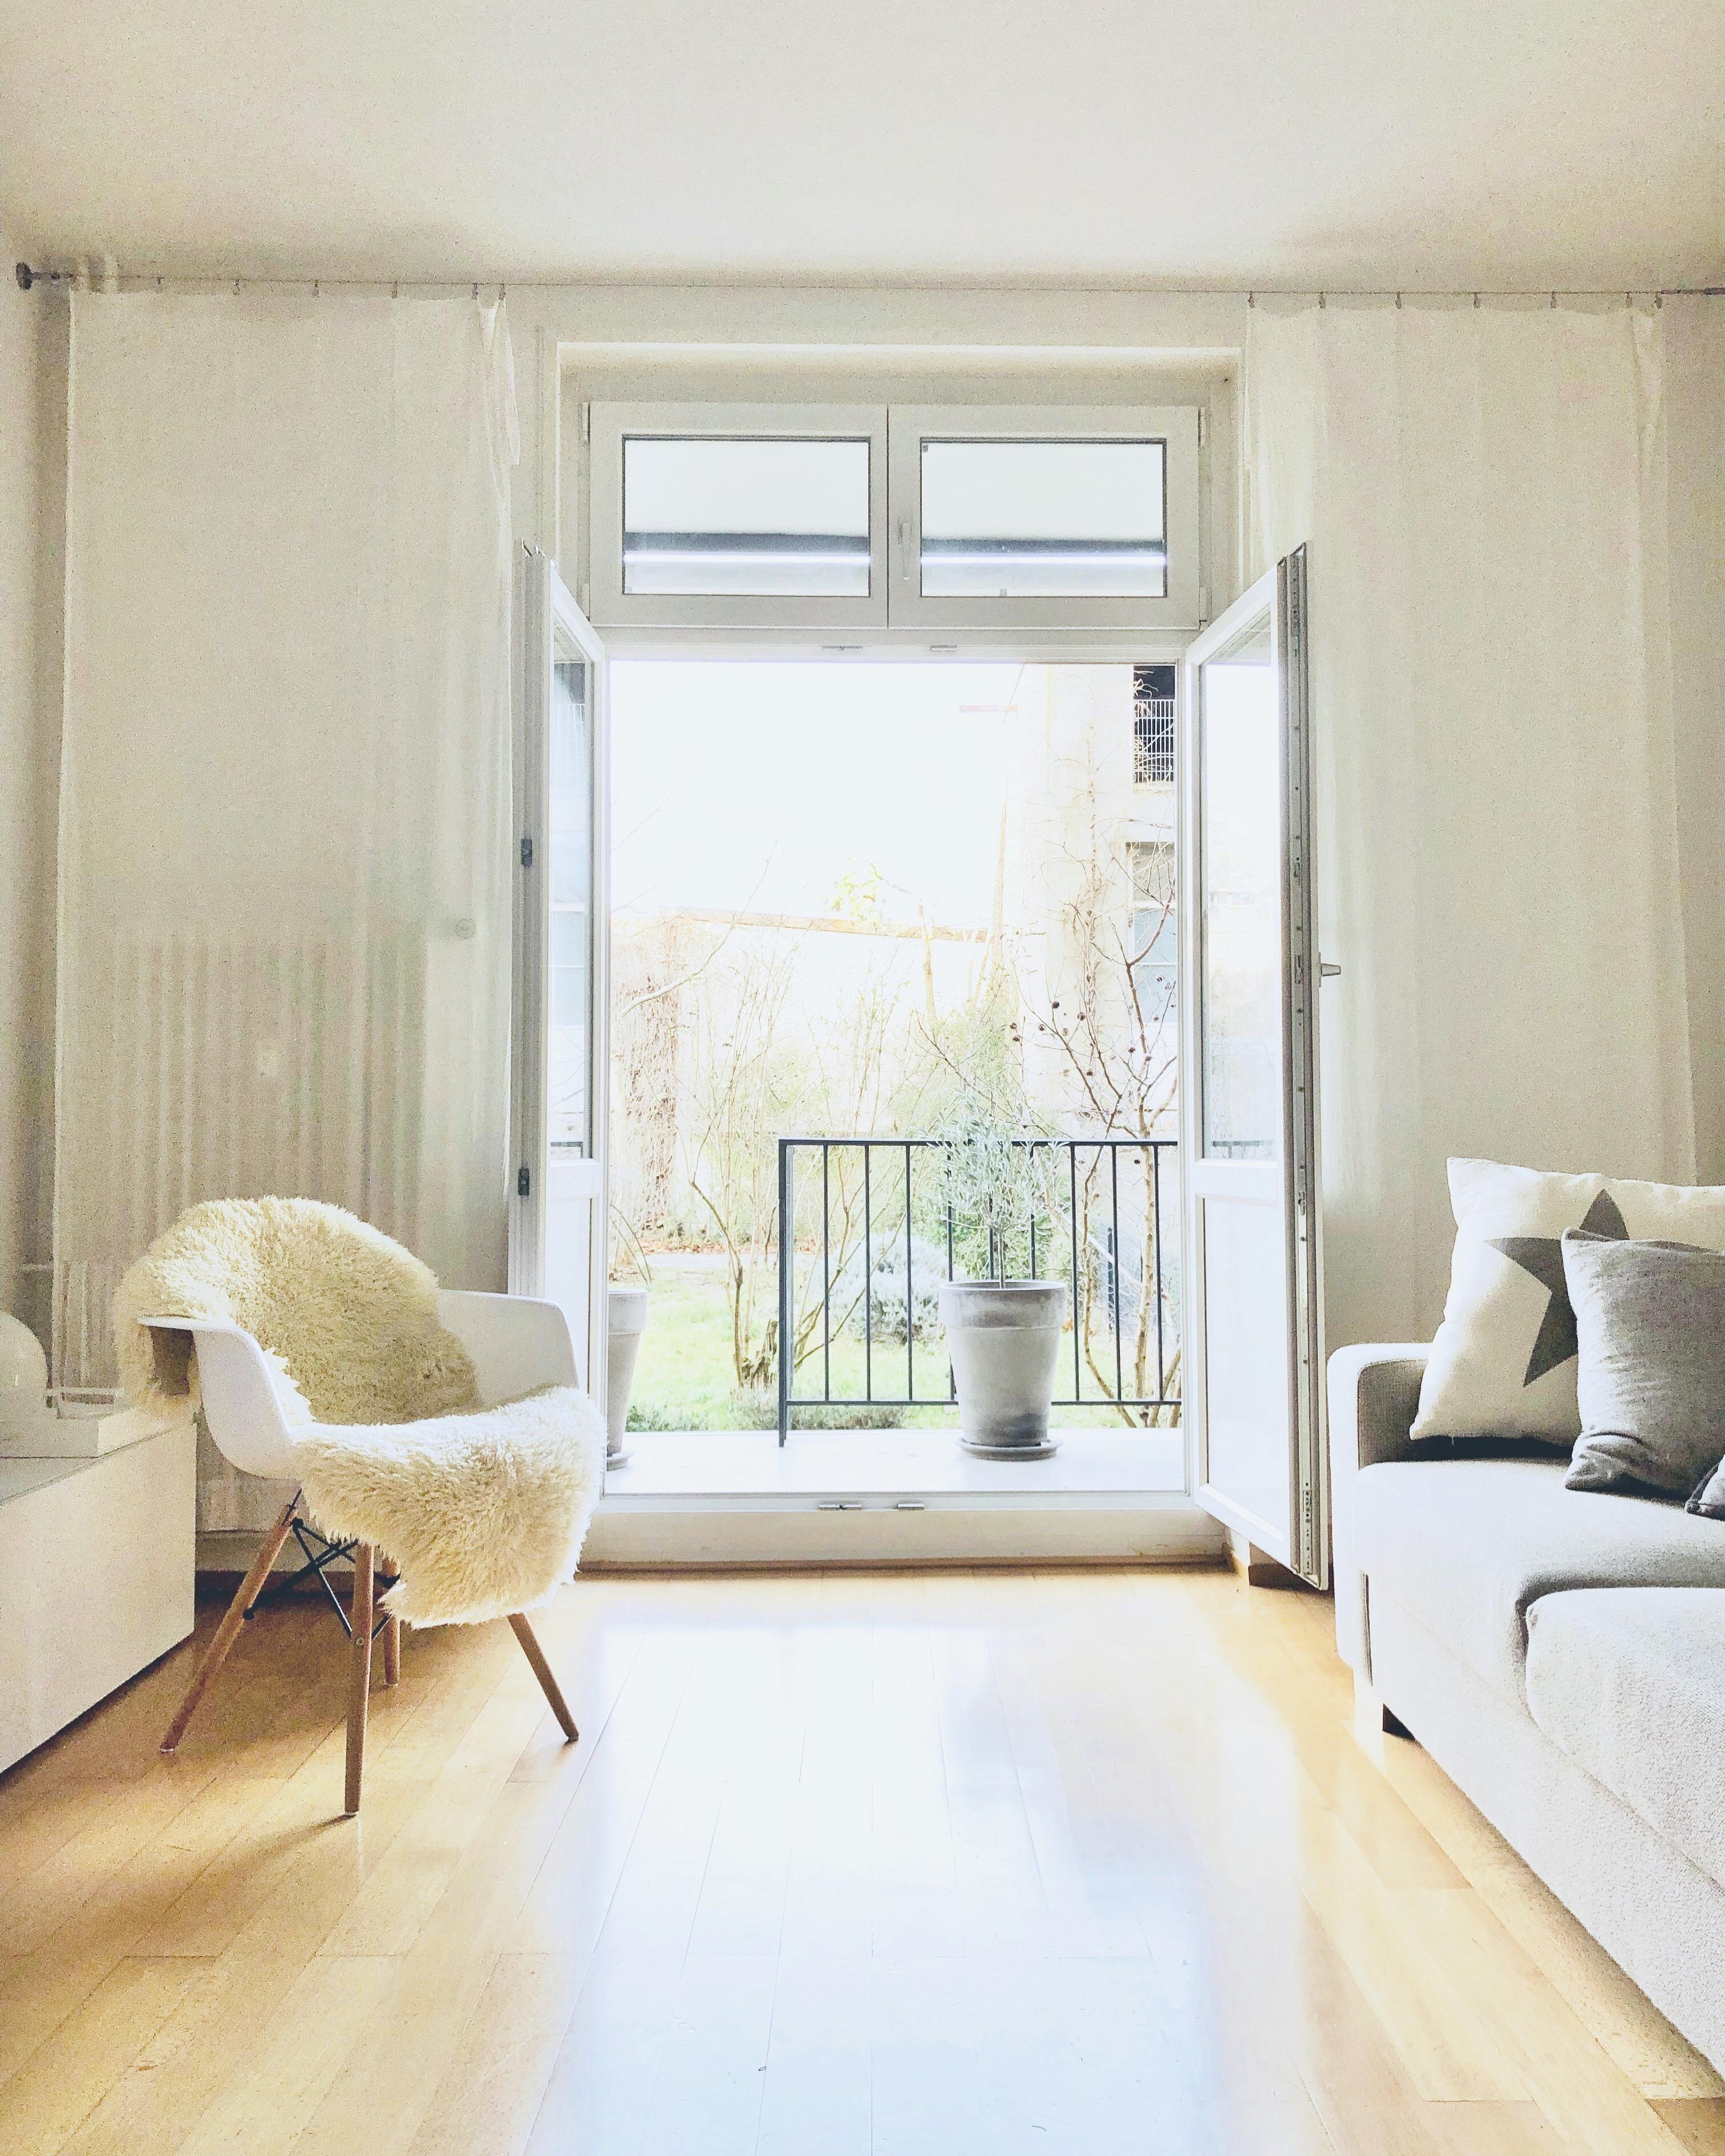 Aussicht auf Frühling! #spring #livingroom #interior #whiteliving #scandystyle 